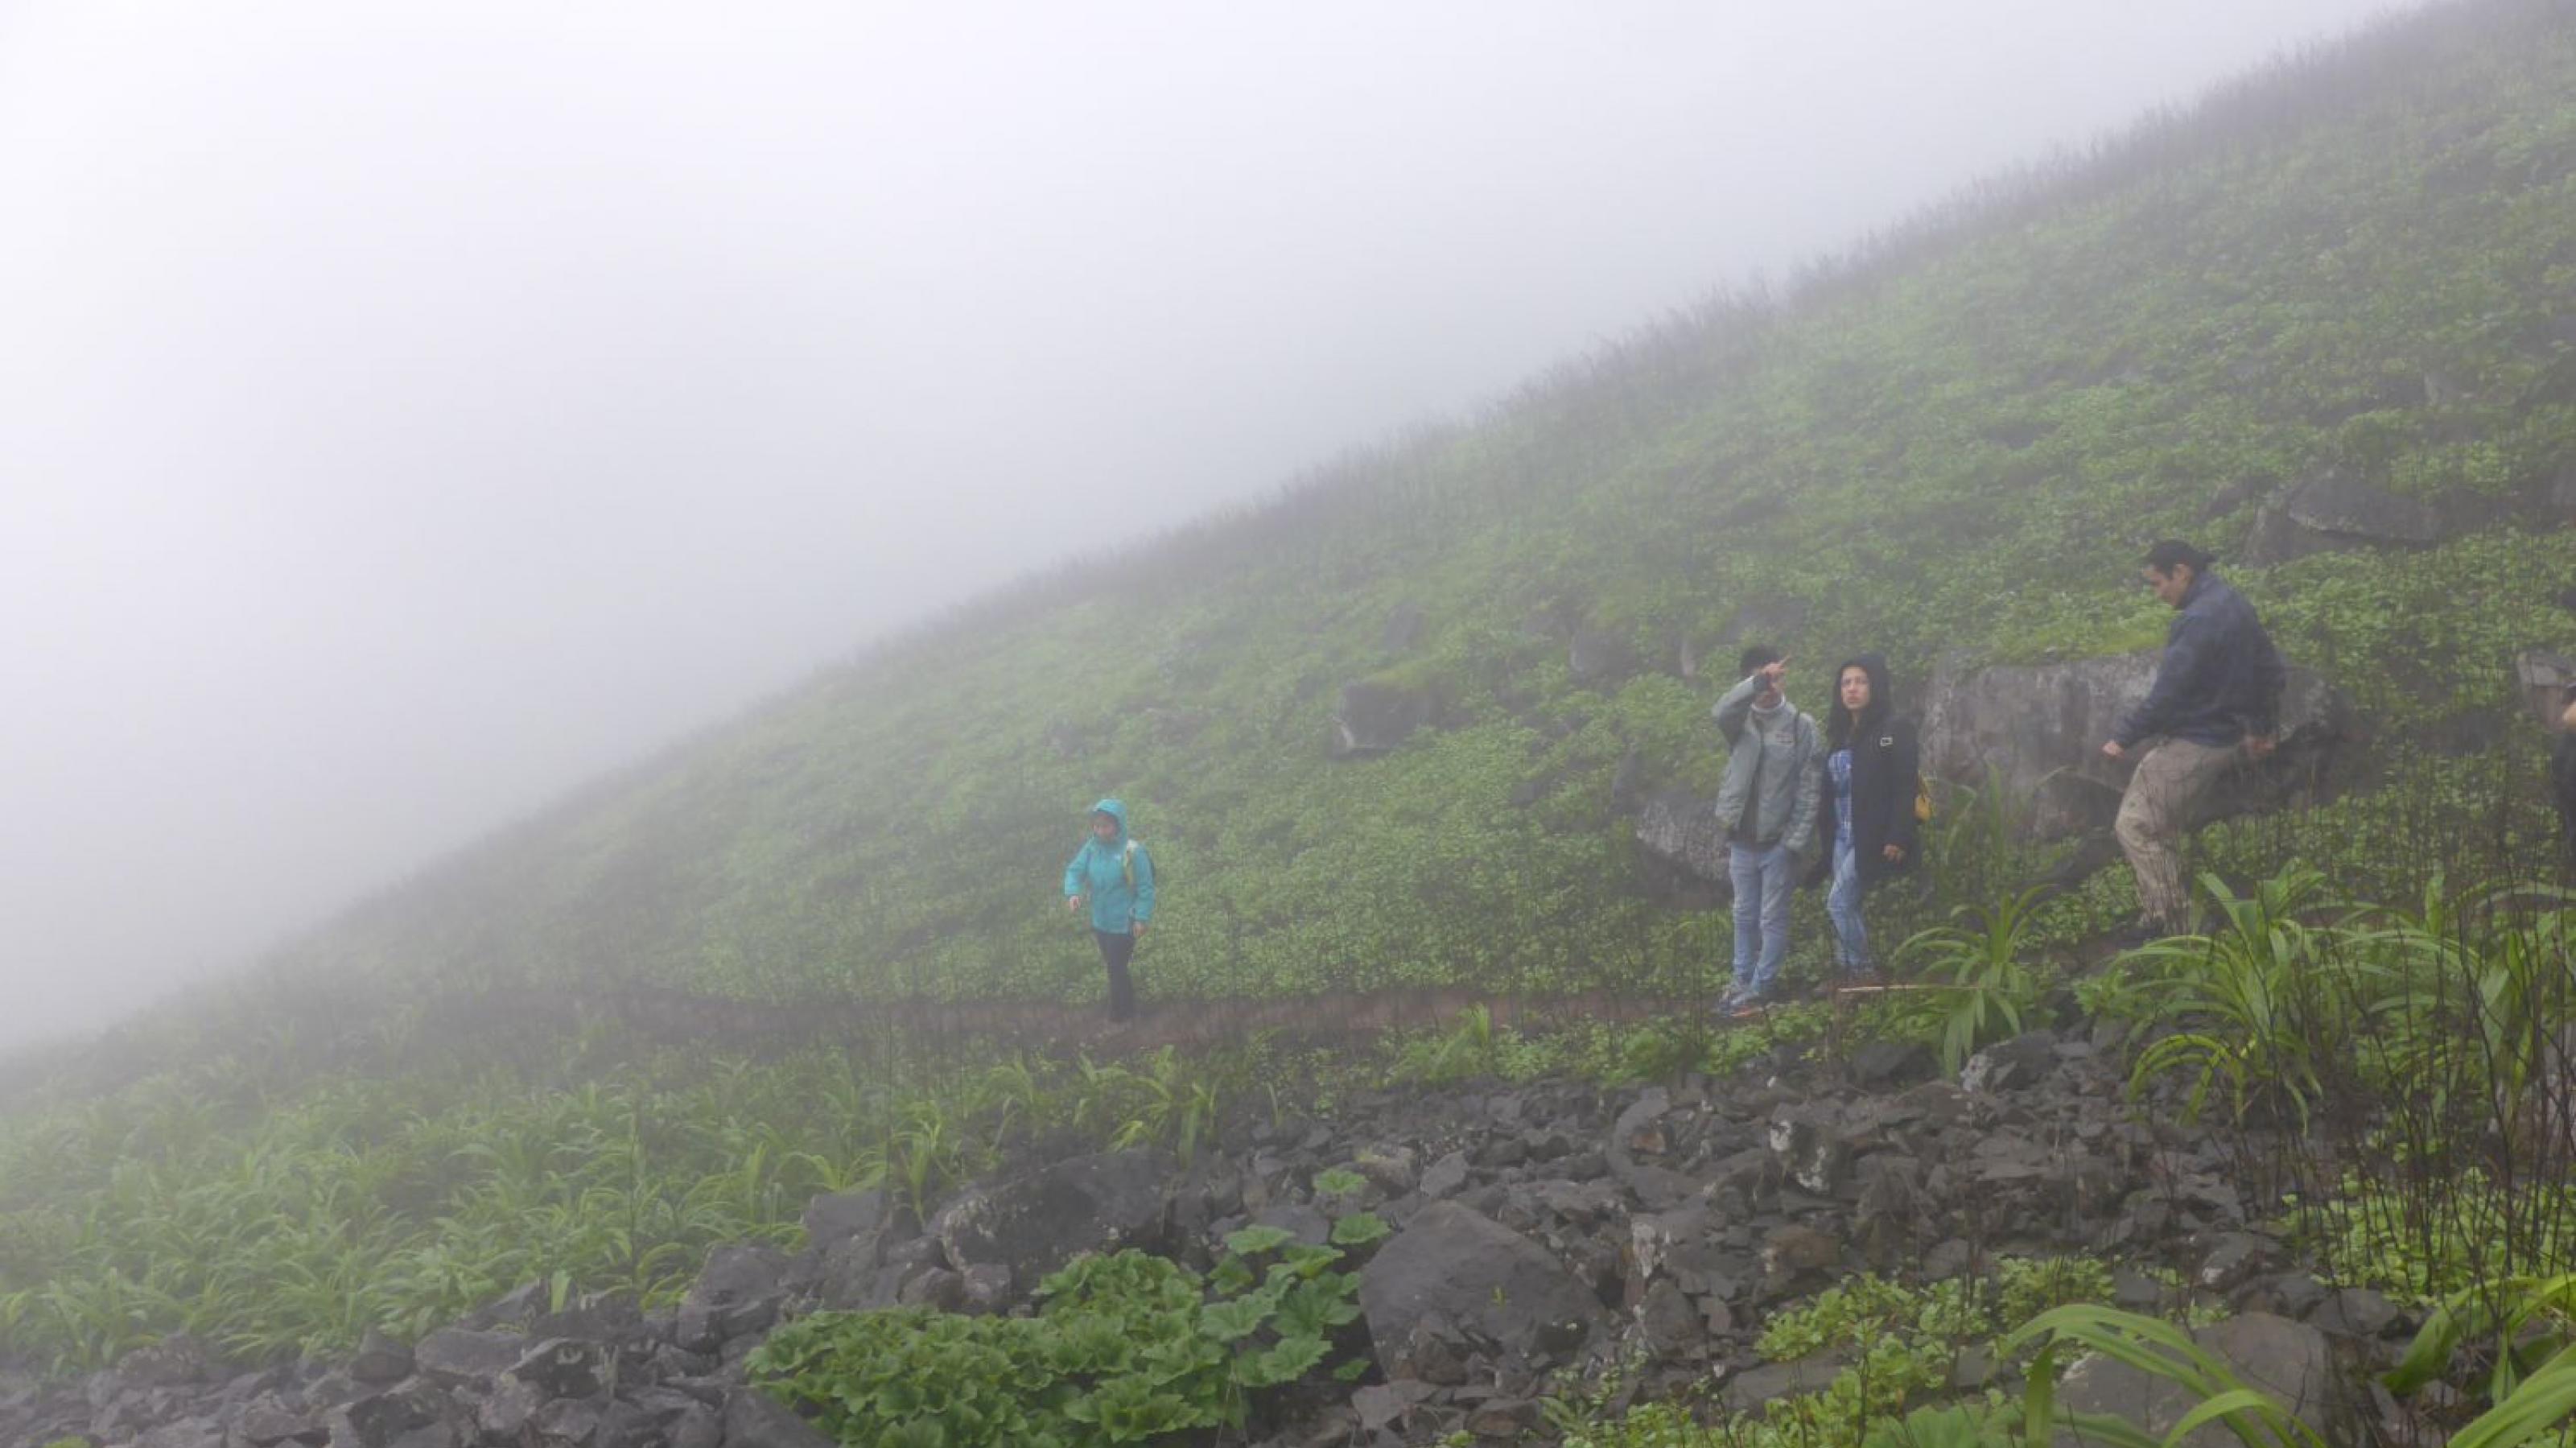 Neblige Landschaft, grüner Hang, mit vier Wanderern.